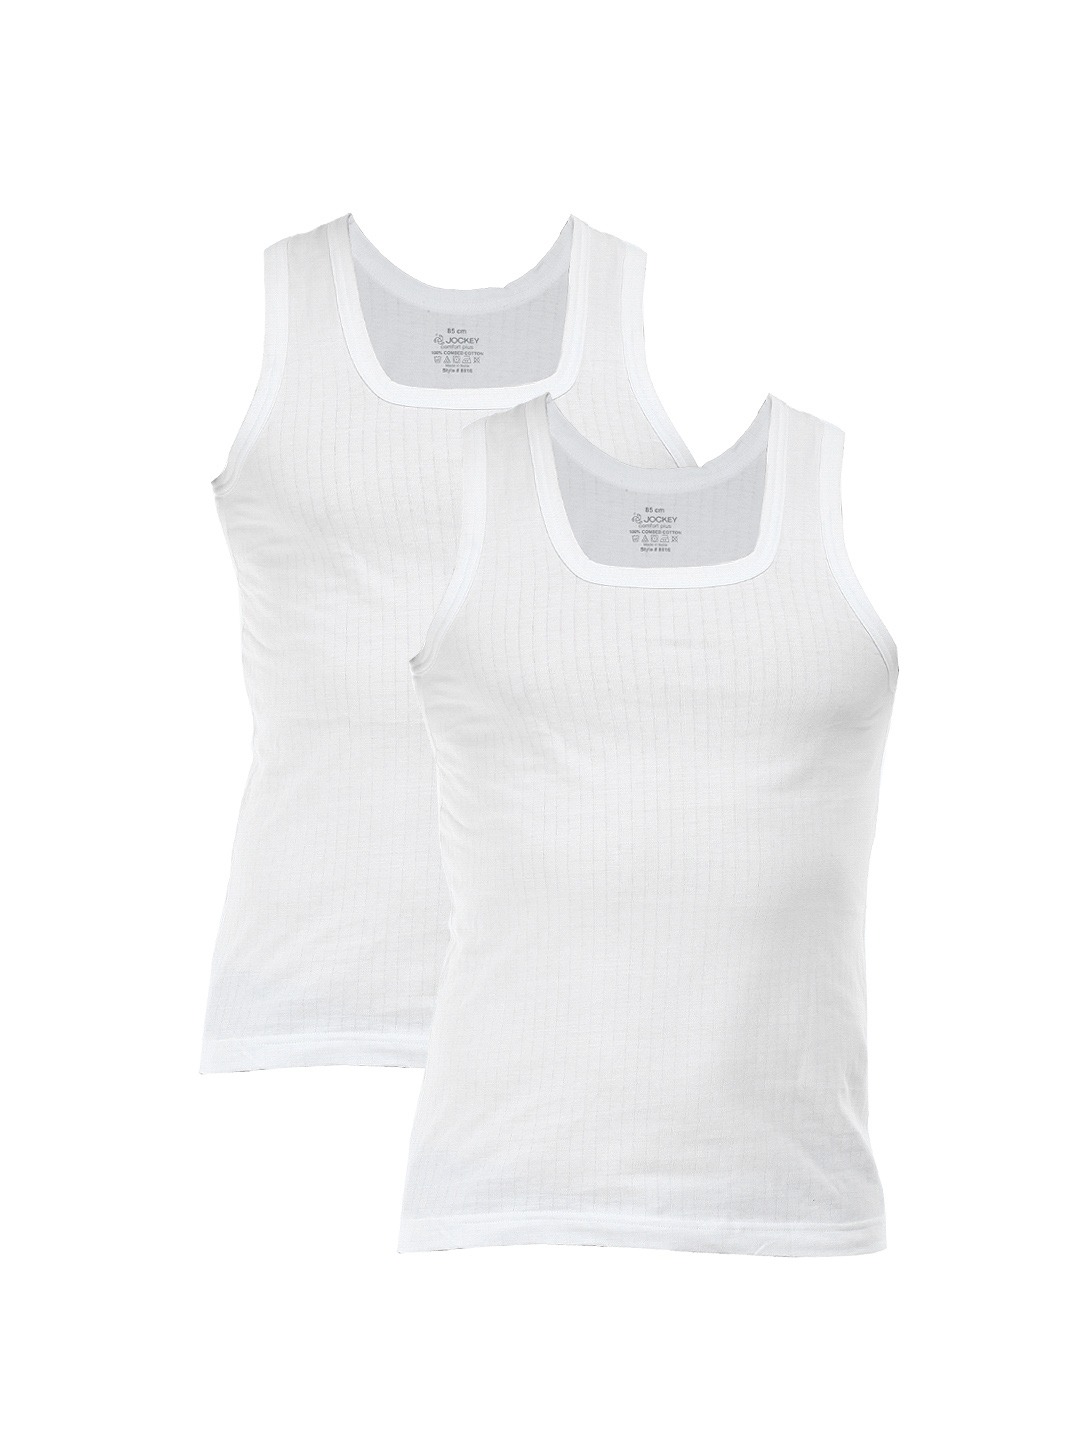 Clothing Innerwear Vests | Jockey COMFORT PLUS Men White Innerwear Vest (Pack of 2) 8816 - RC44034